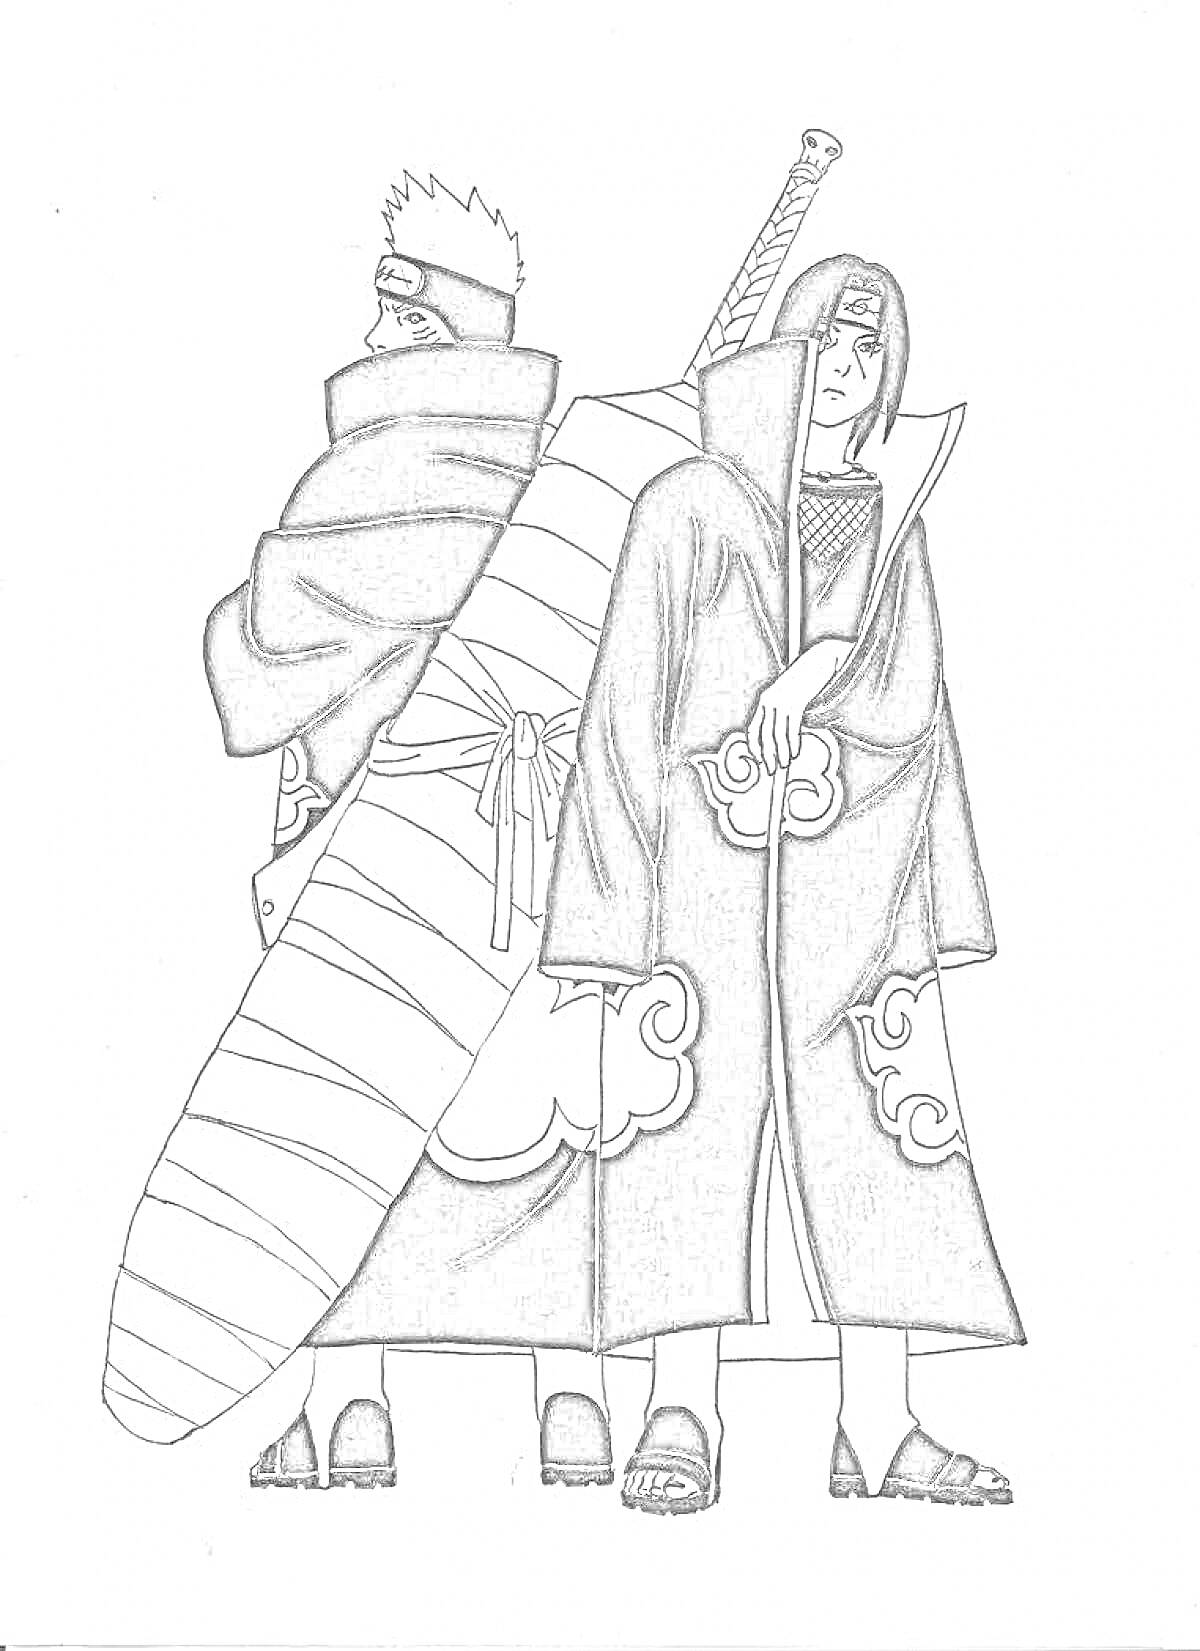 Раскраска Двое персонажей в длинных плащах с капюшонами, один из которых держит меч, оба стоят спиной друг к другу